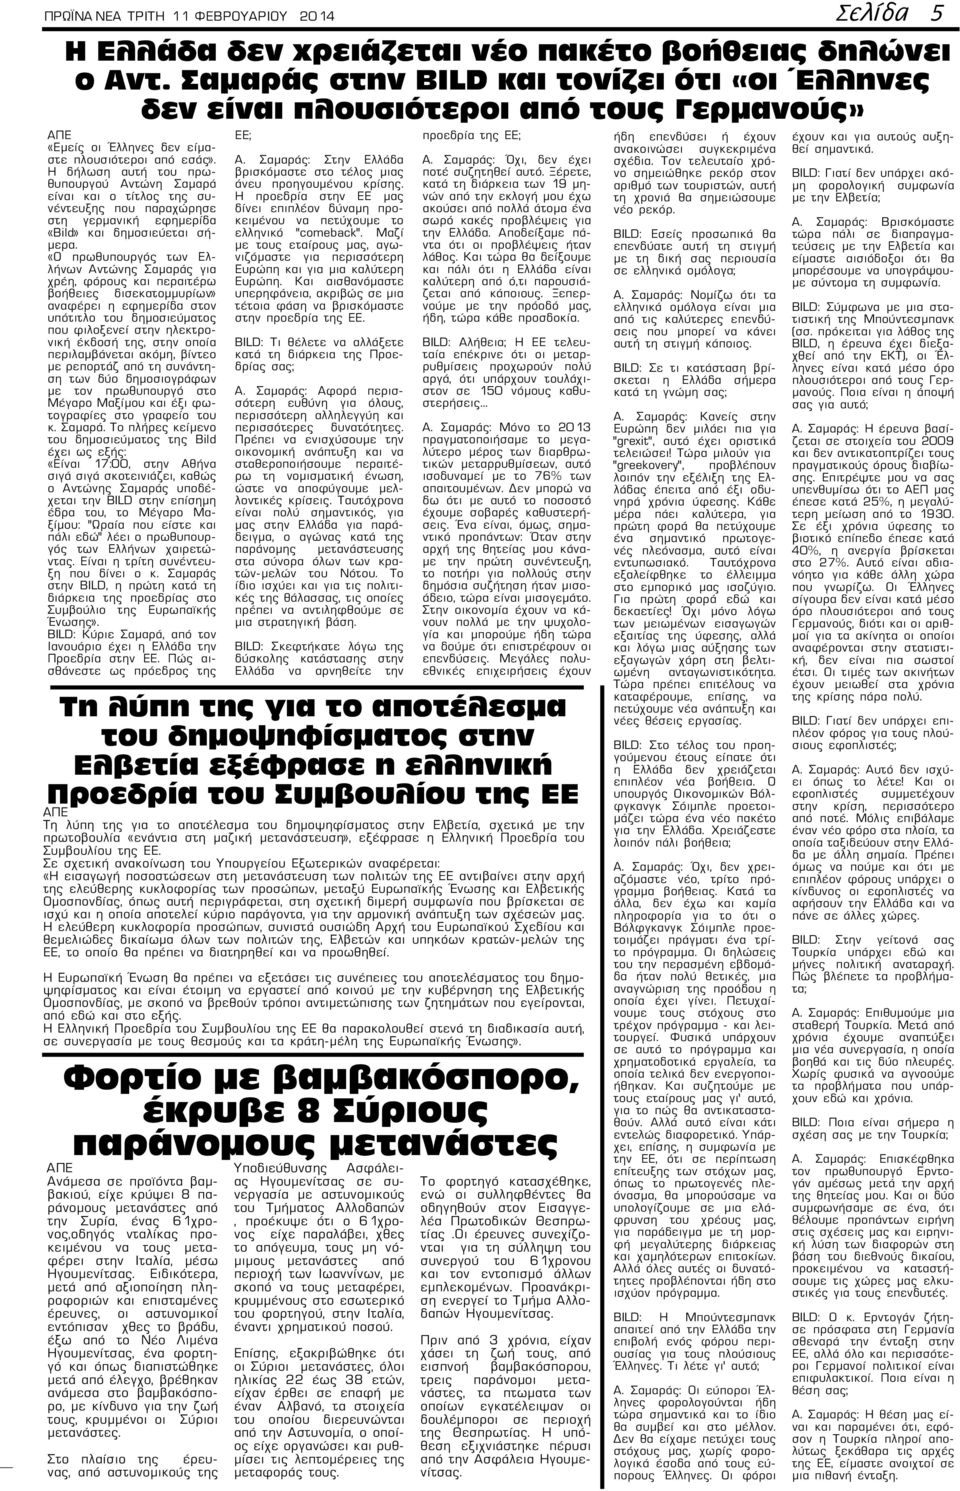 Η δήλωση αυτή του πρωθυπουργού Αντώνη Σαμαρά είναι και ο τίτλος της συνέντευξης που παραχώρησε στη γερμανική εφημερίδα «Bild» και δημοσιεύεται σήμερα.